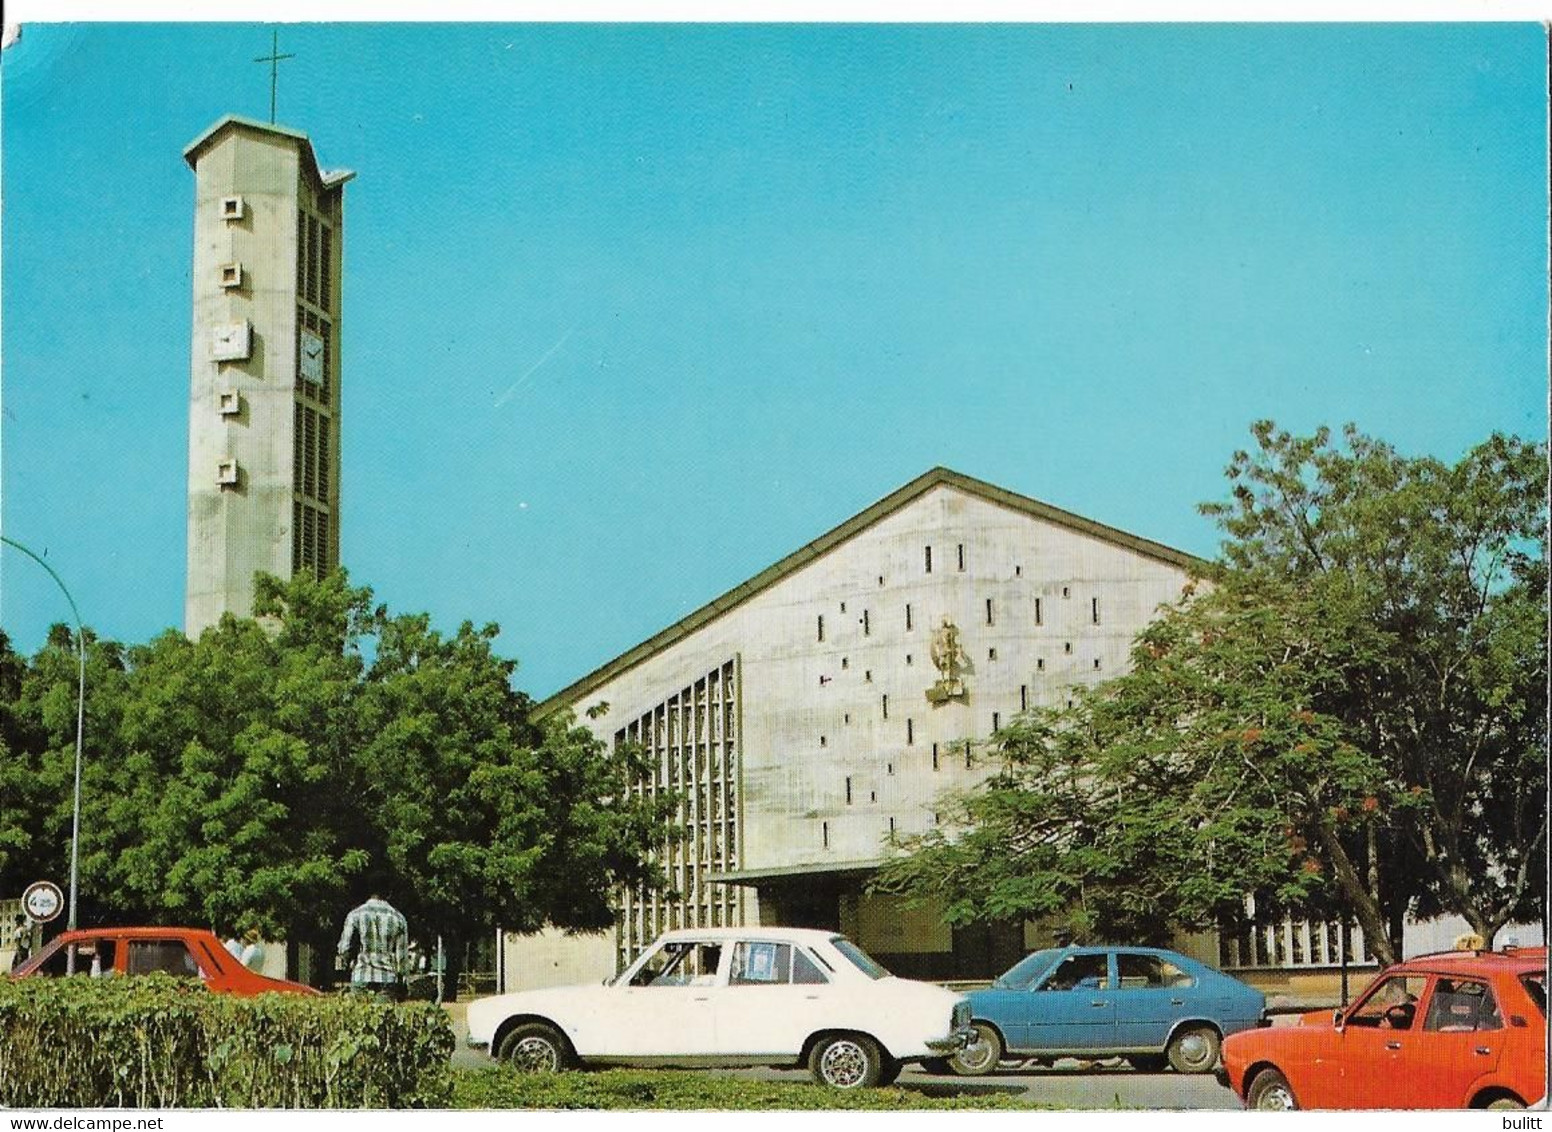 COTE D'IVOIRE - BOUAKE - La Cathédrale - Voiture - Costa D'Avorio